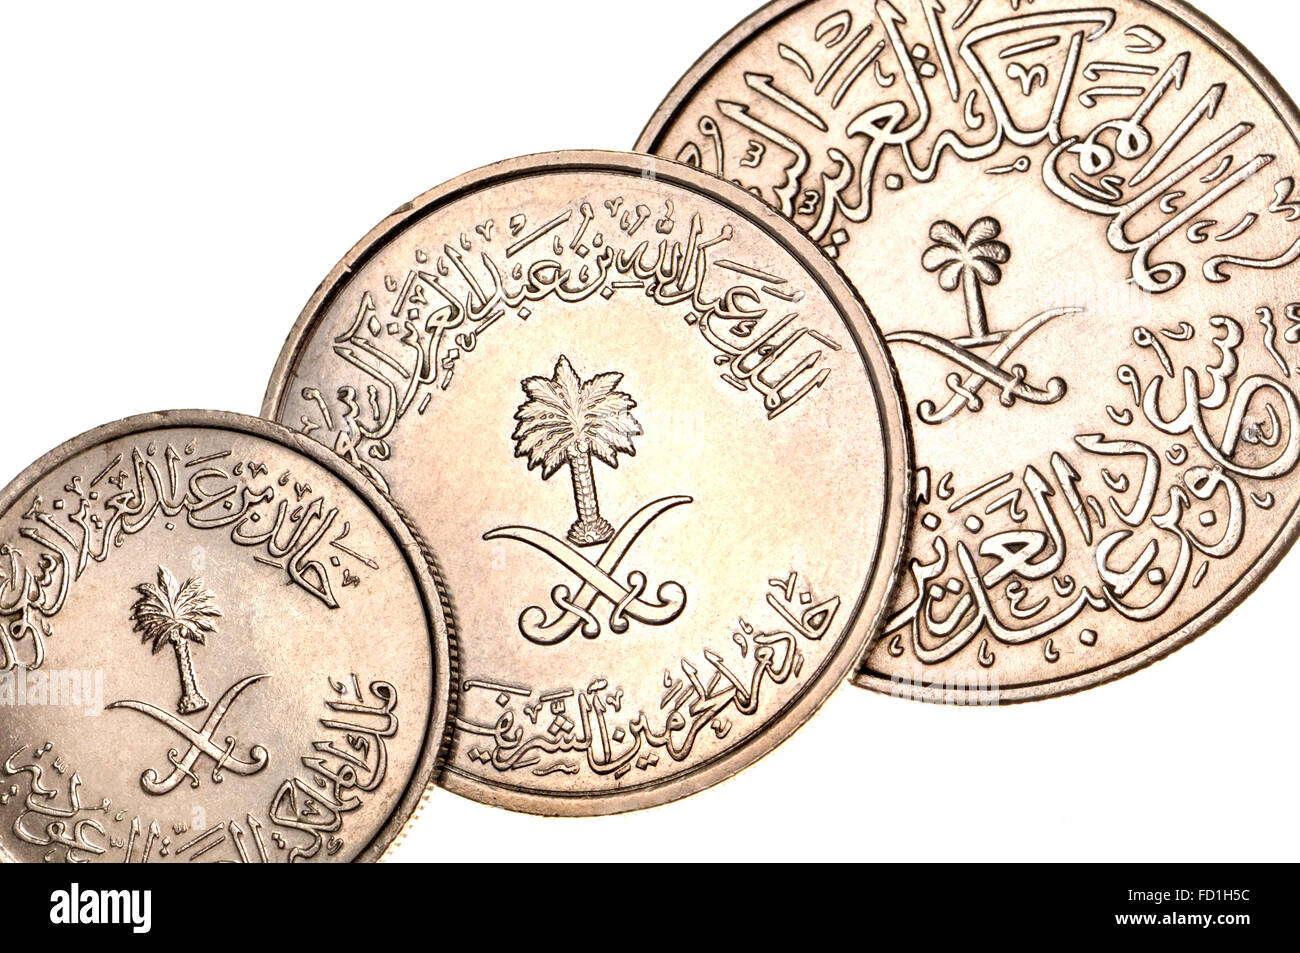 Coins de l'Arabie saoudite montrant l'Est de l'écriture arabe et chiffres, palmier et épées croisées Banque D'Images